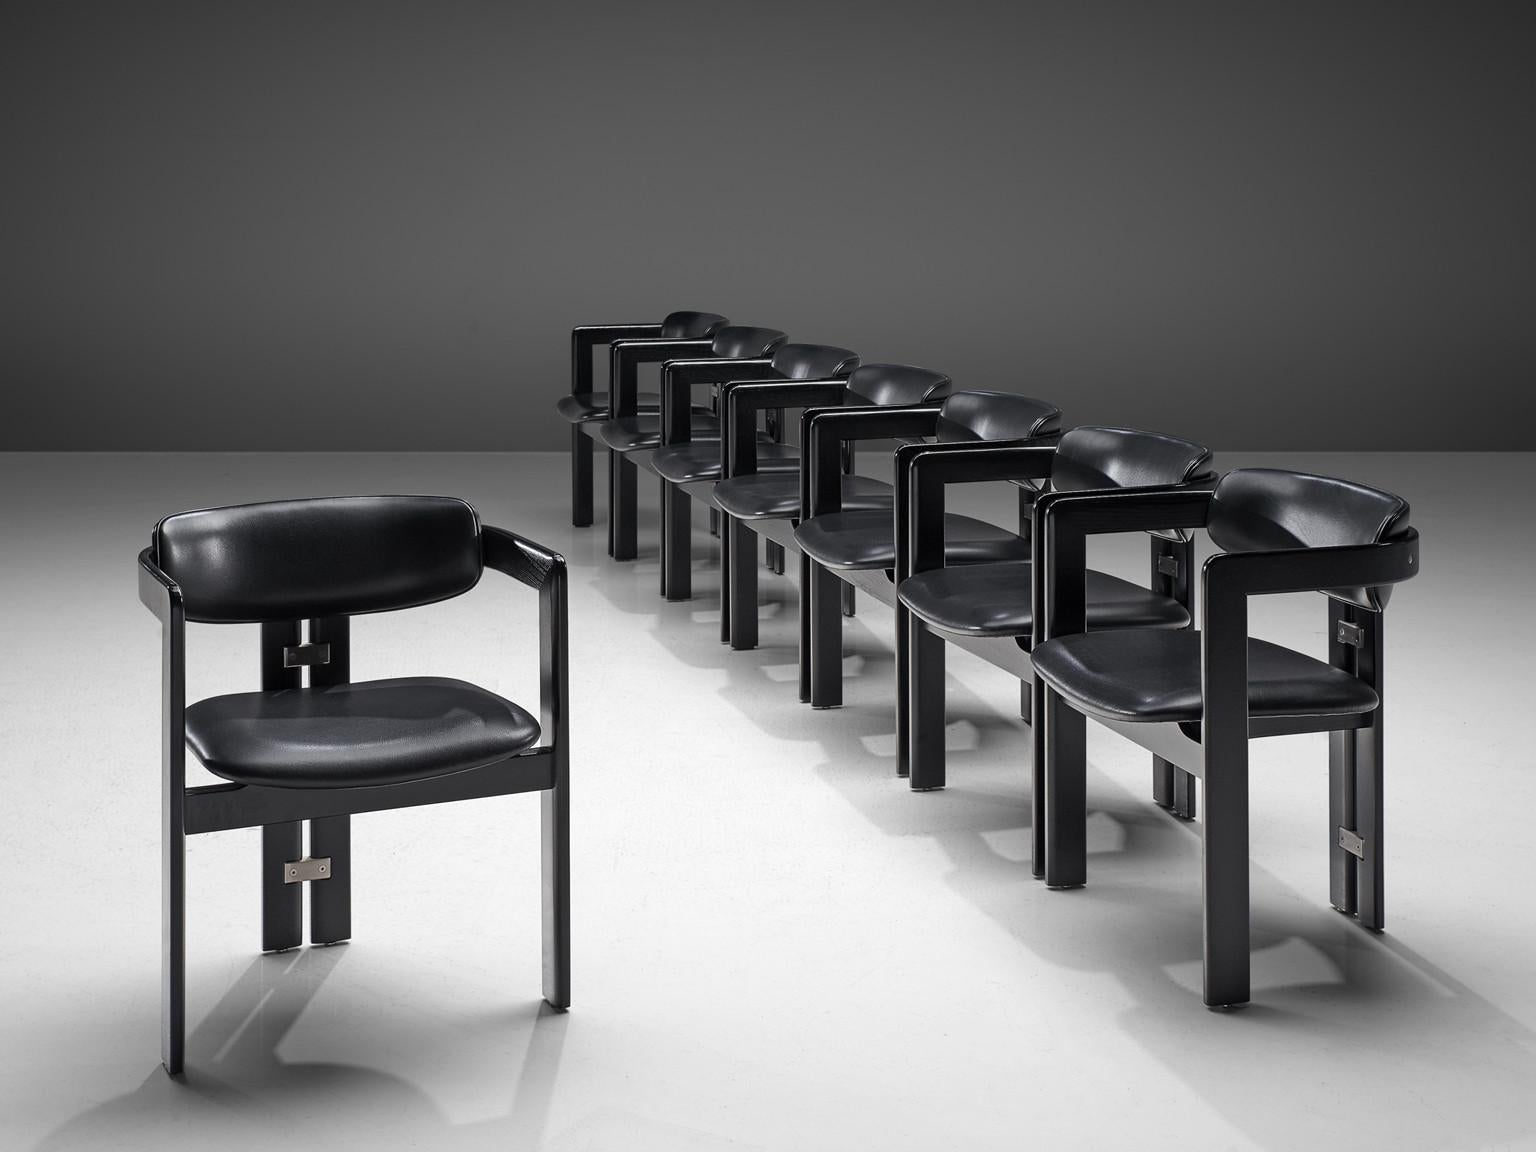 Augusto Savini pour Pozzi, chaises de salle à manger 'Pamplona', bois laqué, cuir, aluminium, Italie, design 1965

Fauteuils 